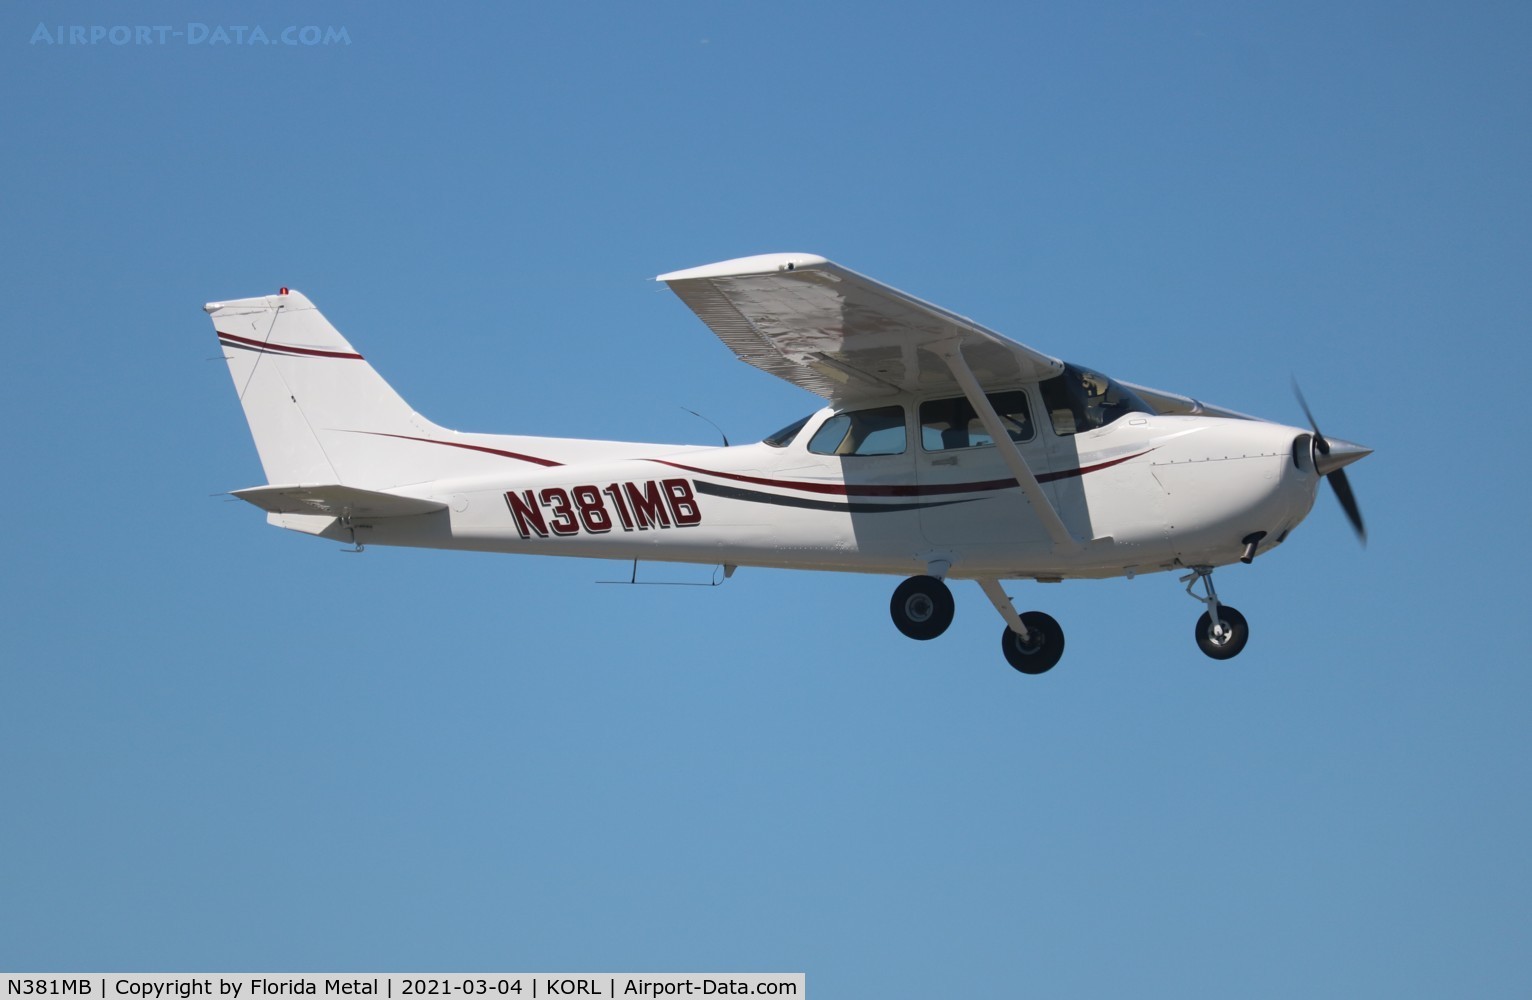 N381MB, 1978 Cessna R182 Skylane RG C/N R18200385, R182 zx